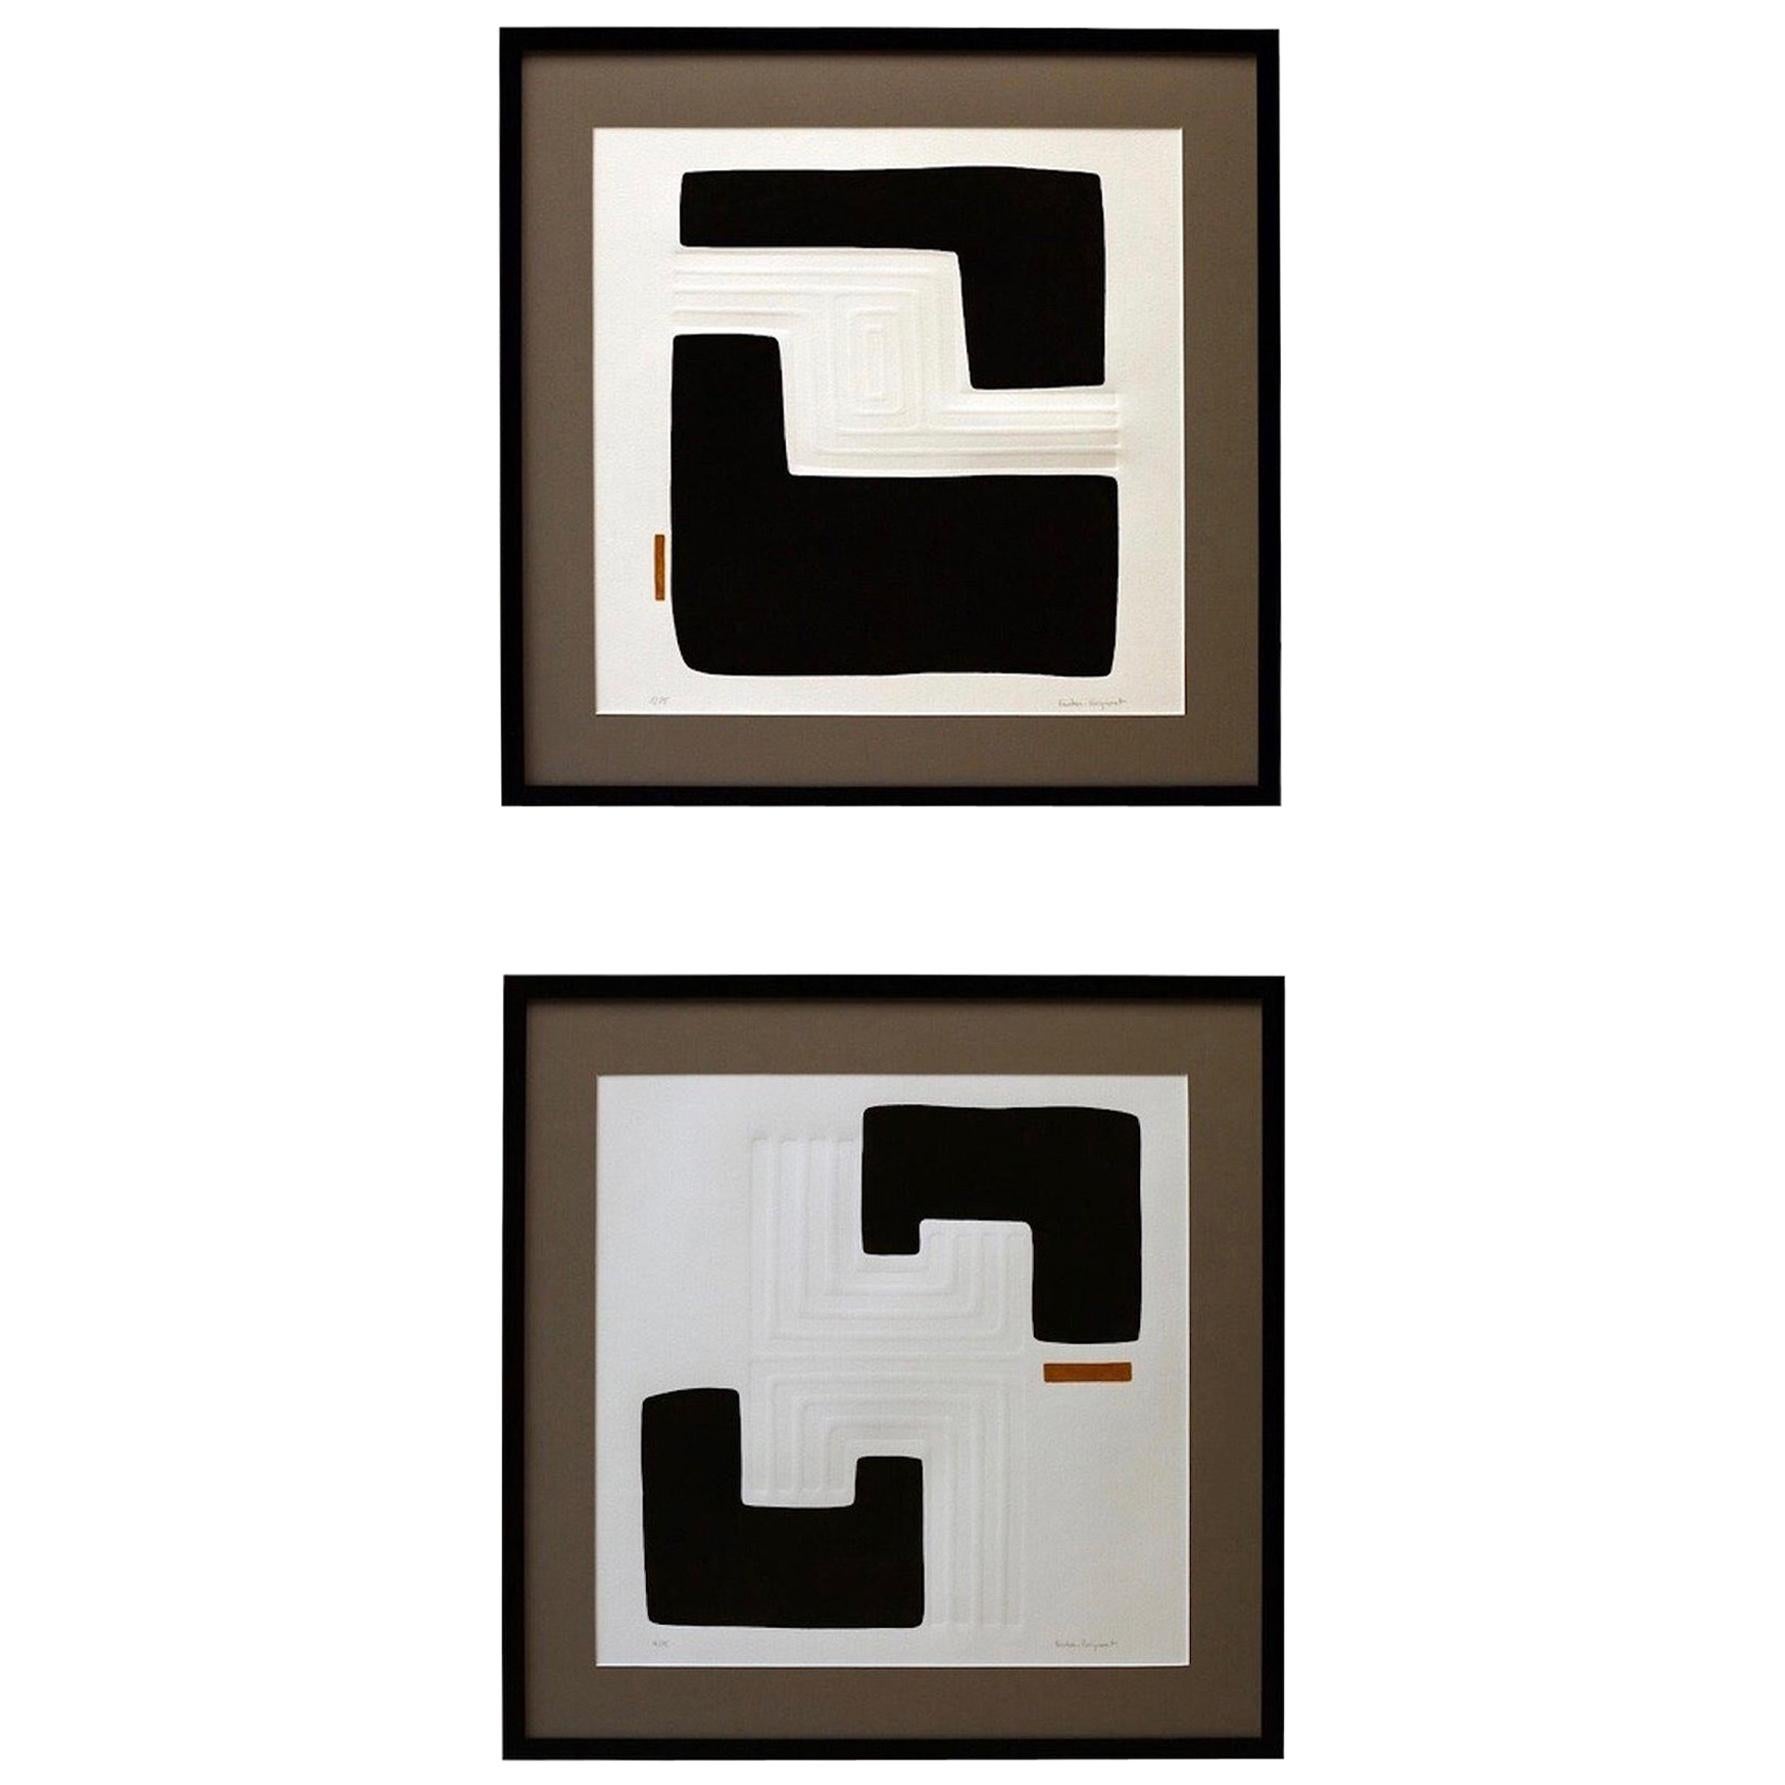 Gravures en noir et blanc avec des accents d'or de l'artiste français contemporain Foucher Poignant
Création de motifs géométriques en relief 
Deux modèles uniques disponibles, qui s'accrochent joliment ensemble.
Vendu individuellement.
     